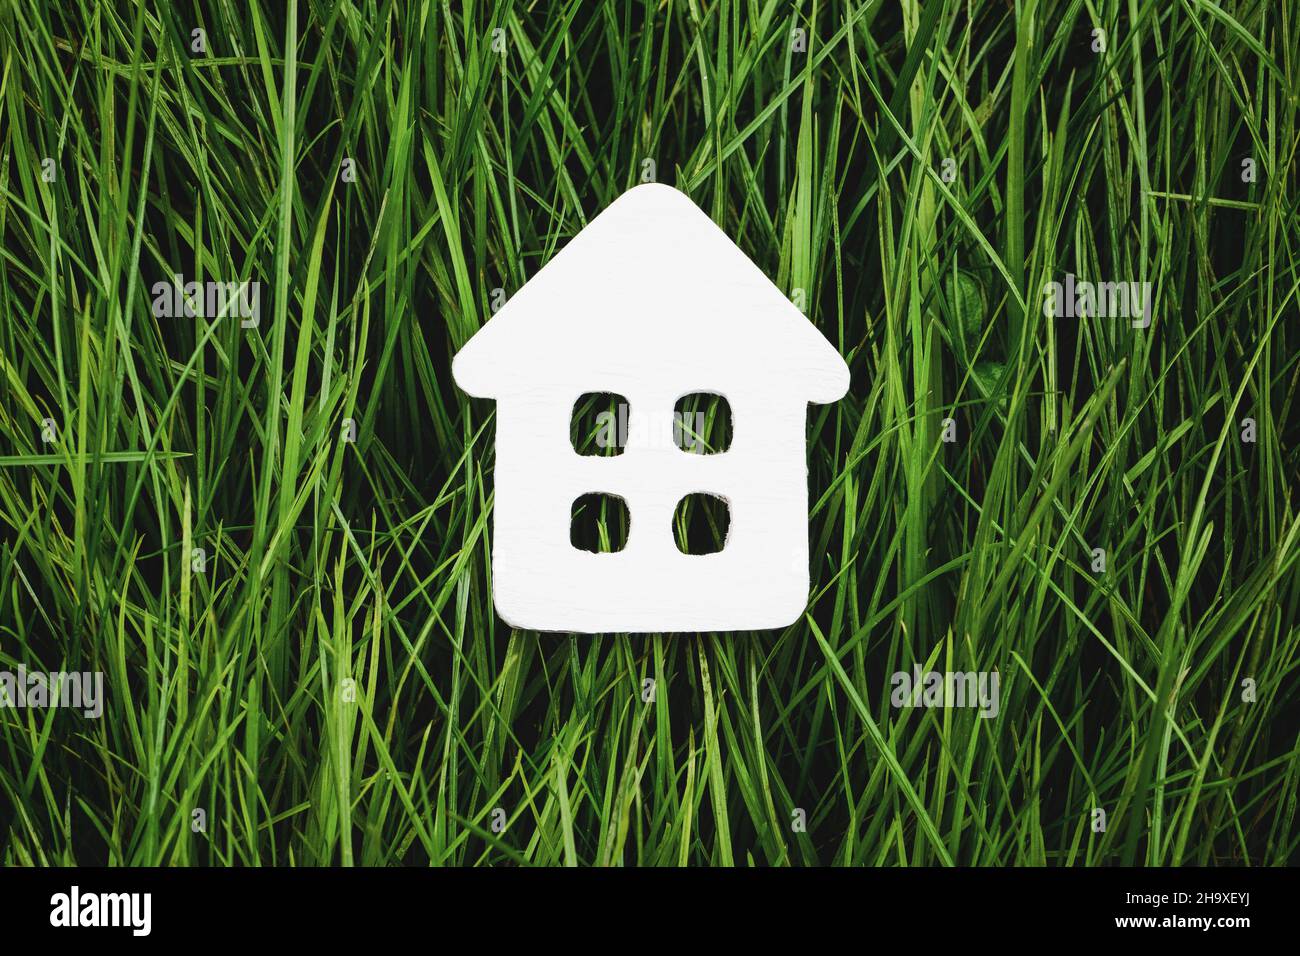 Casa de papel blanco sobre hierba verde, vida sostenible y vivienda ecológica Foto de stock